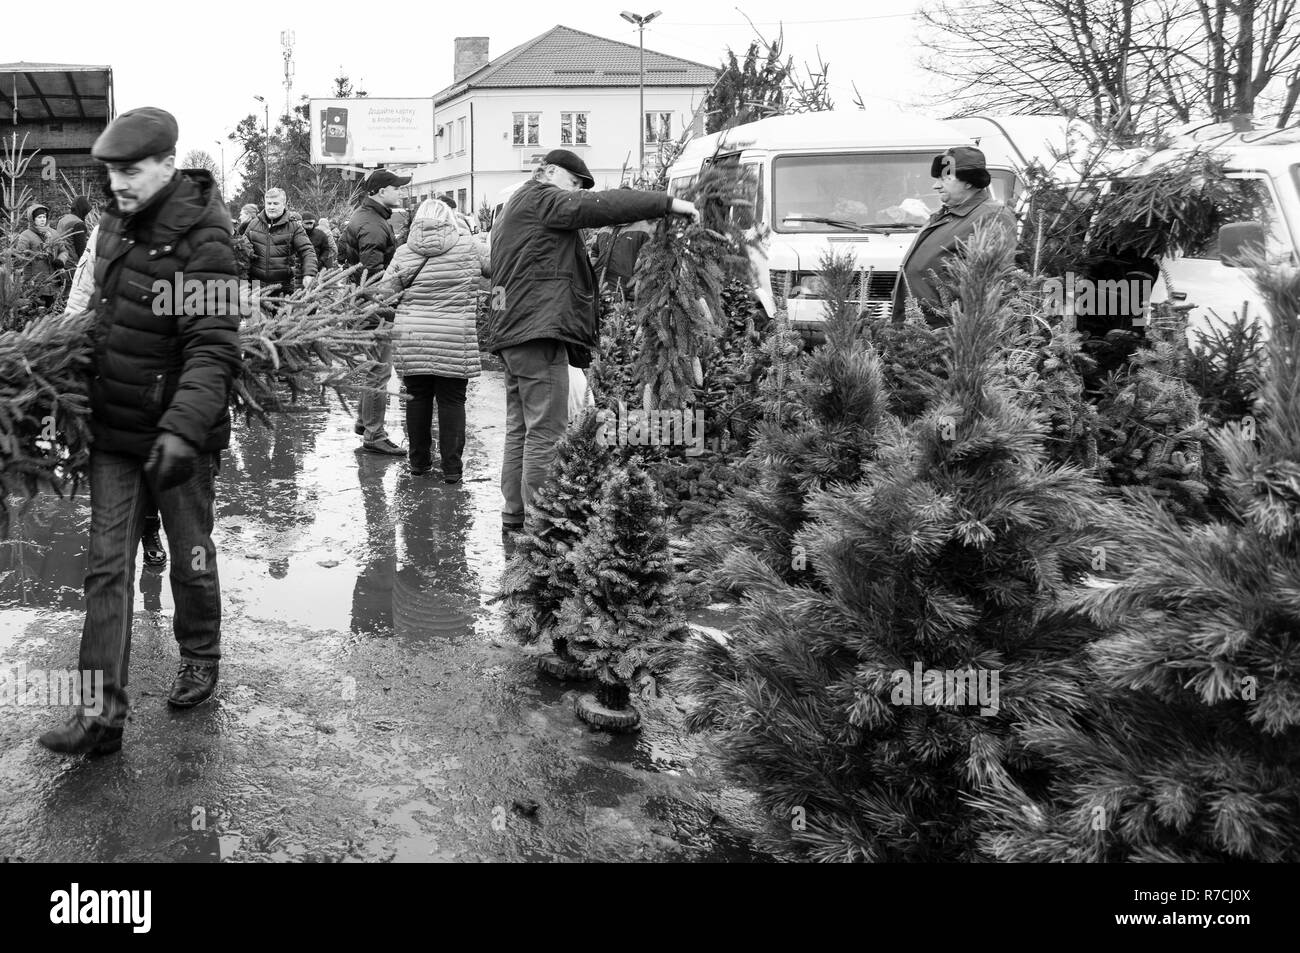 Lemberg, Ukraine - Dezember 31, 2018: Die Menschen kaufen ein Weihnachtsbaum für die Parteien vereinbaren, um das Neue Jahr zu feiern. Stockfoto